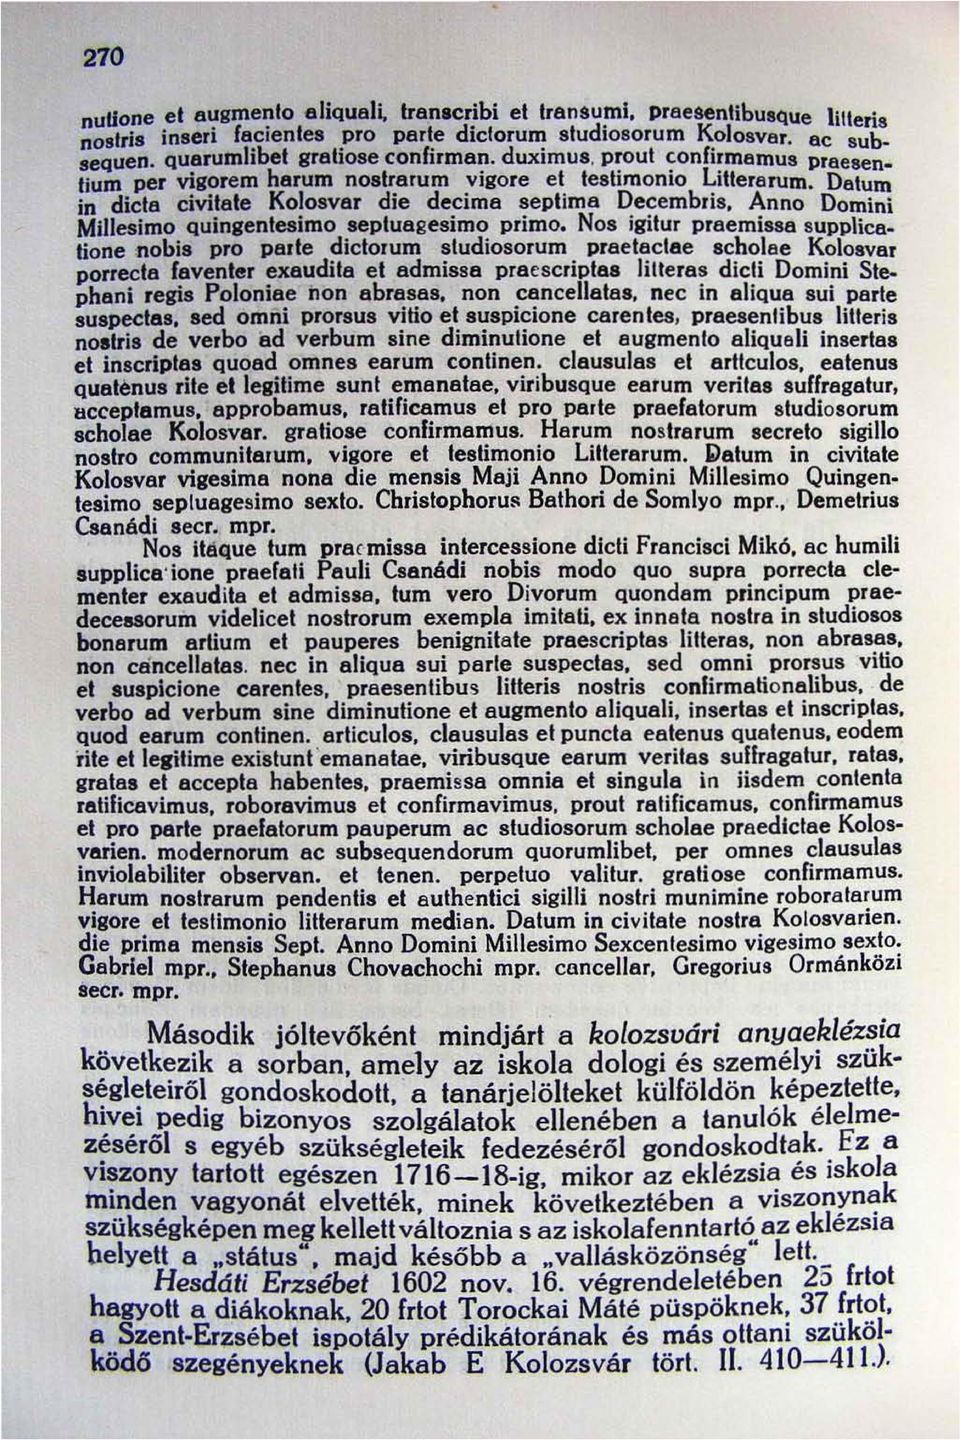 Datum in dida civitate Kolosvar die decima septima Decembris, Anno Domini Millesimo Quingenlesimo sepluagesimo primo.